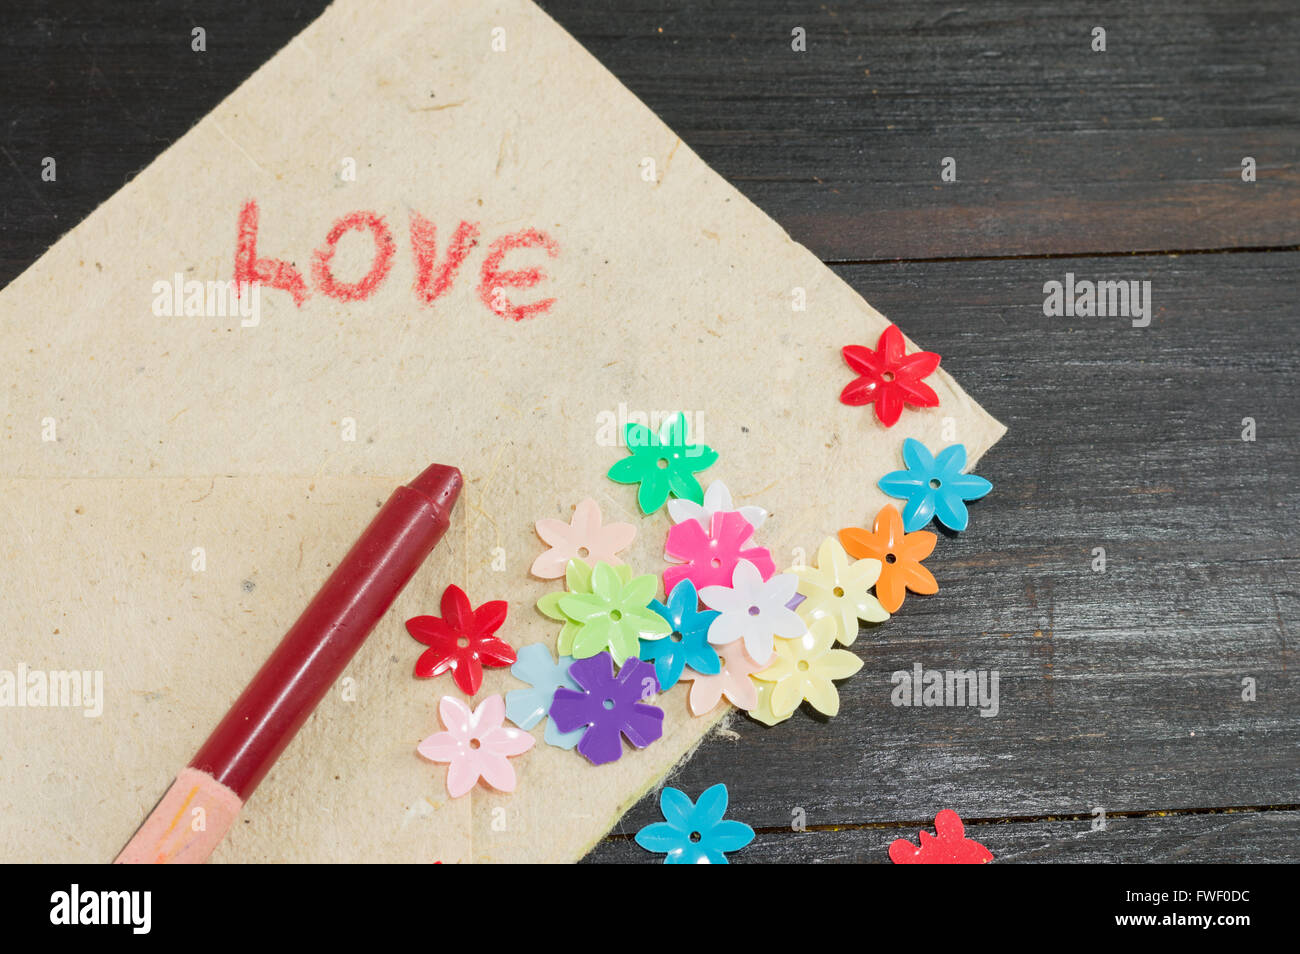 Amor palabra manuscrita en papel con flores artificiales Foto de stock